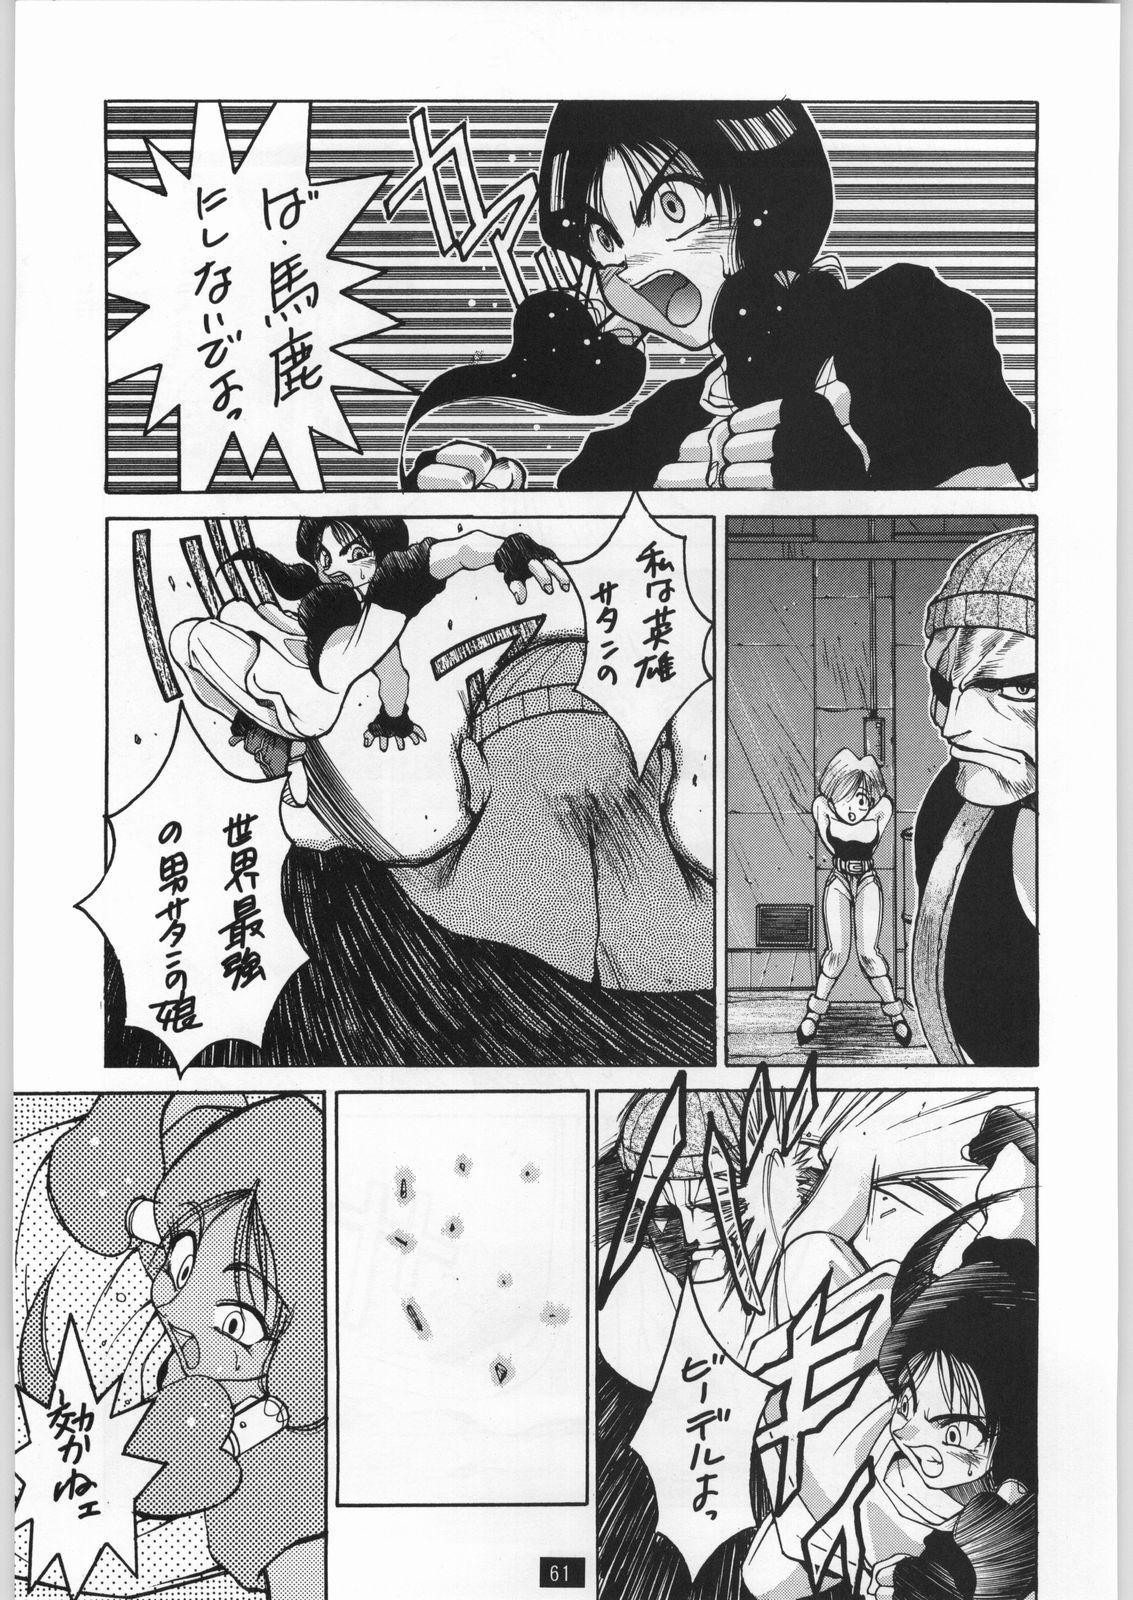 Ink Yamadataro - Dragon ball z Jerkoff - Page 5